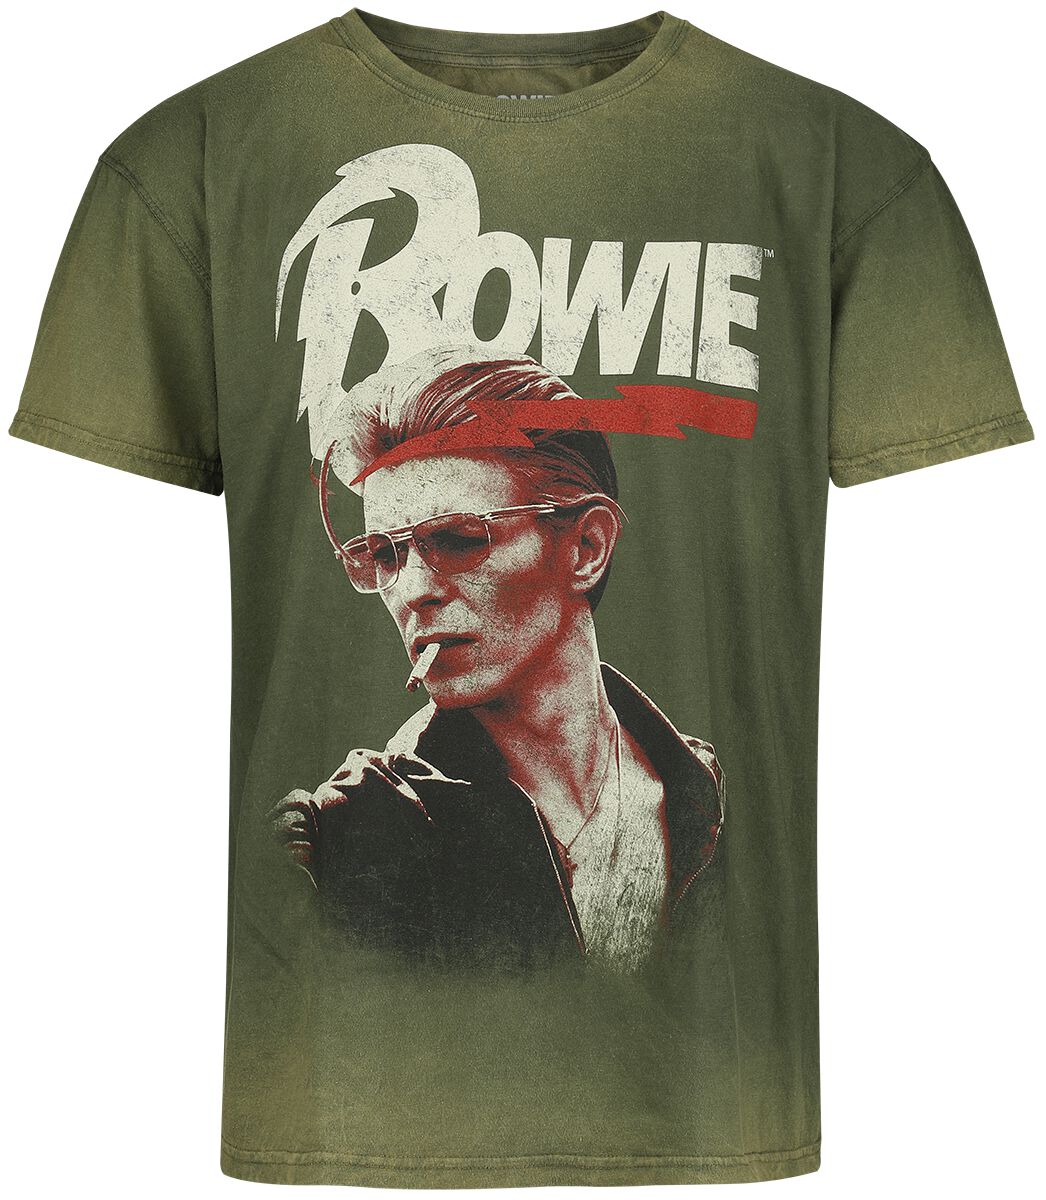 David Bowie T-Shirt - Smoking - S bis 3XL - für Männer - Größe L - grün  - Lizenziertes Merchandise!